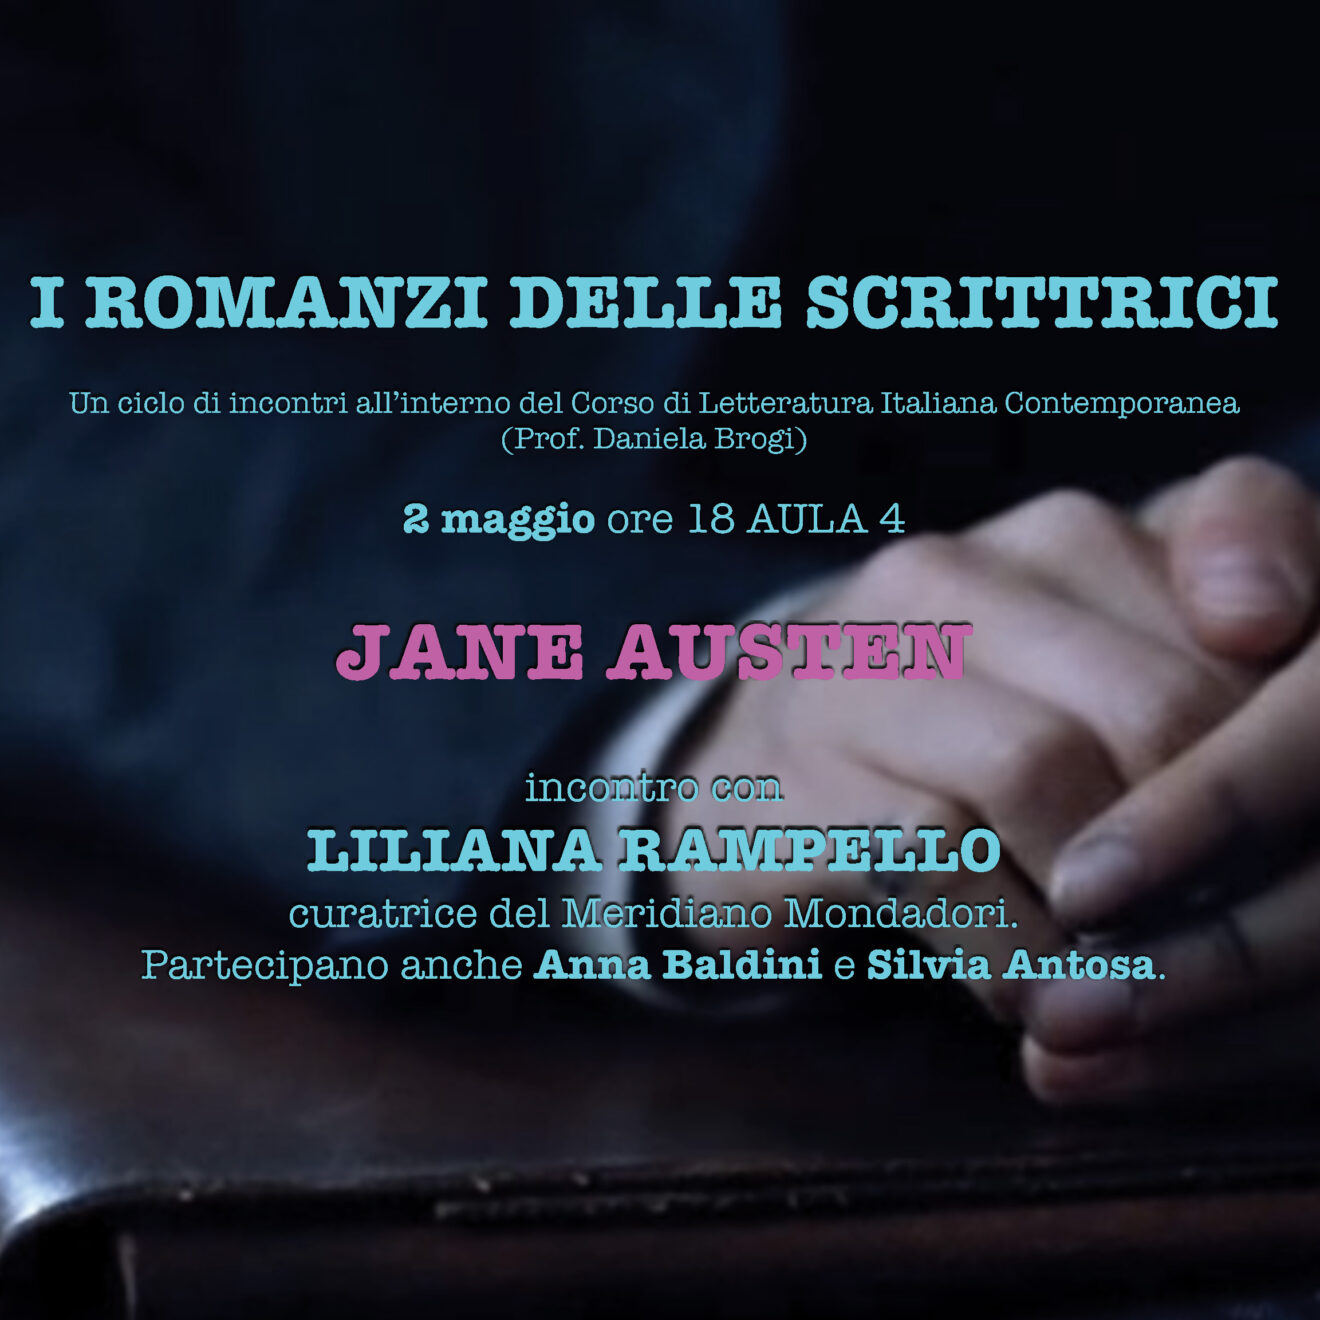 2/5/2023 - Incontro con Liliana Rampello